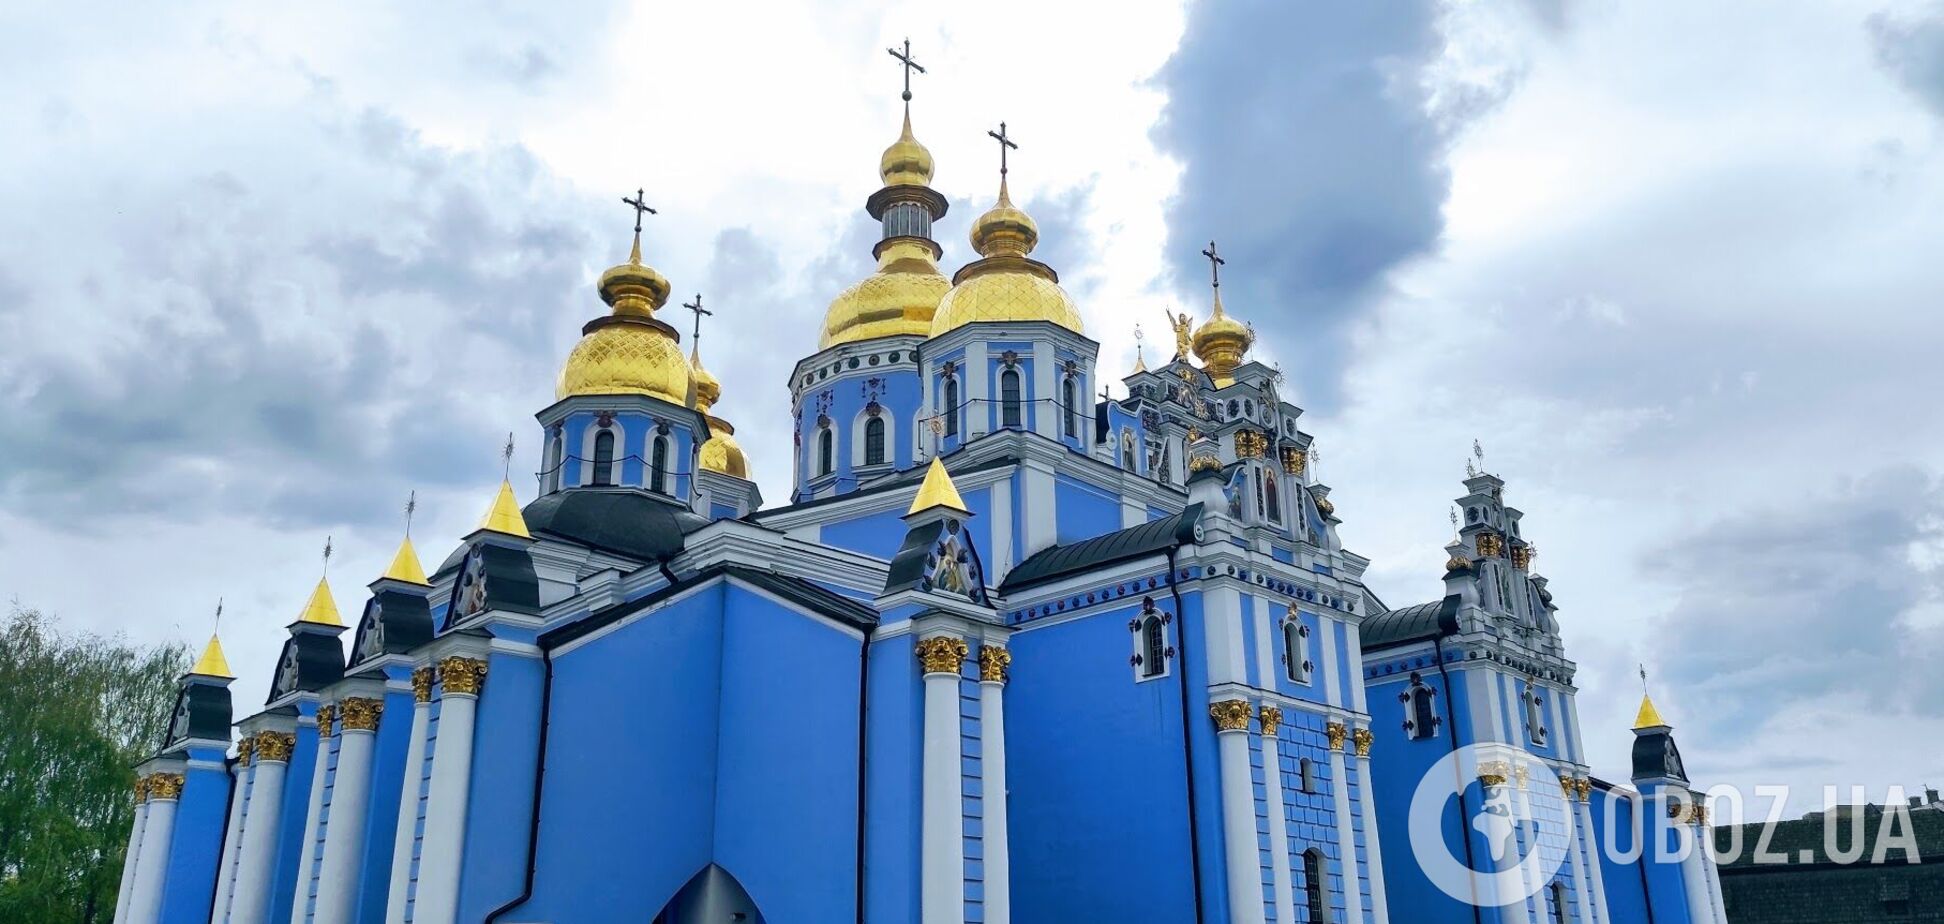 Михайловский собор был восстановлен